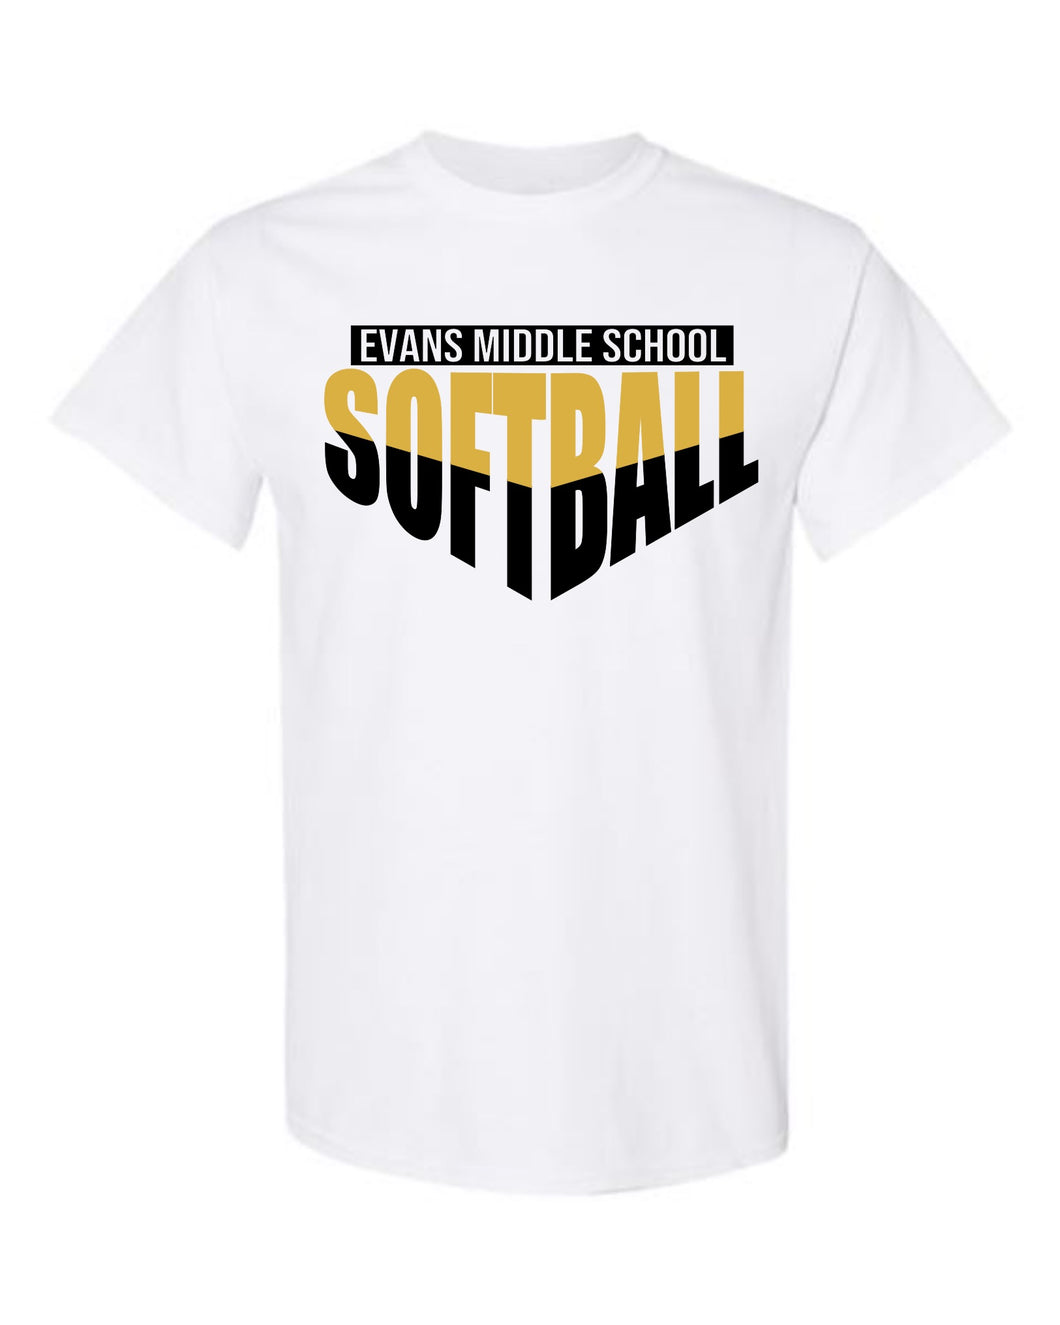 Evans Middle Softball Diamond Tshirt